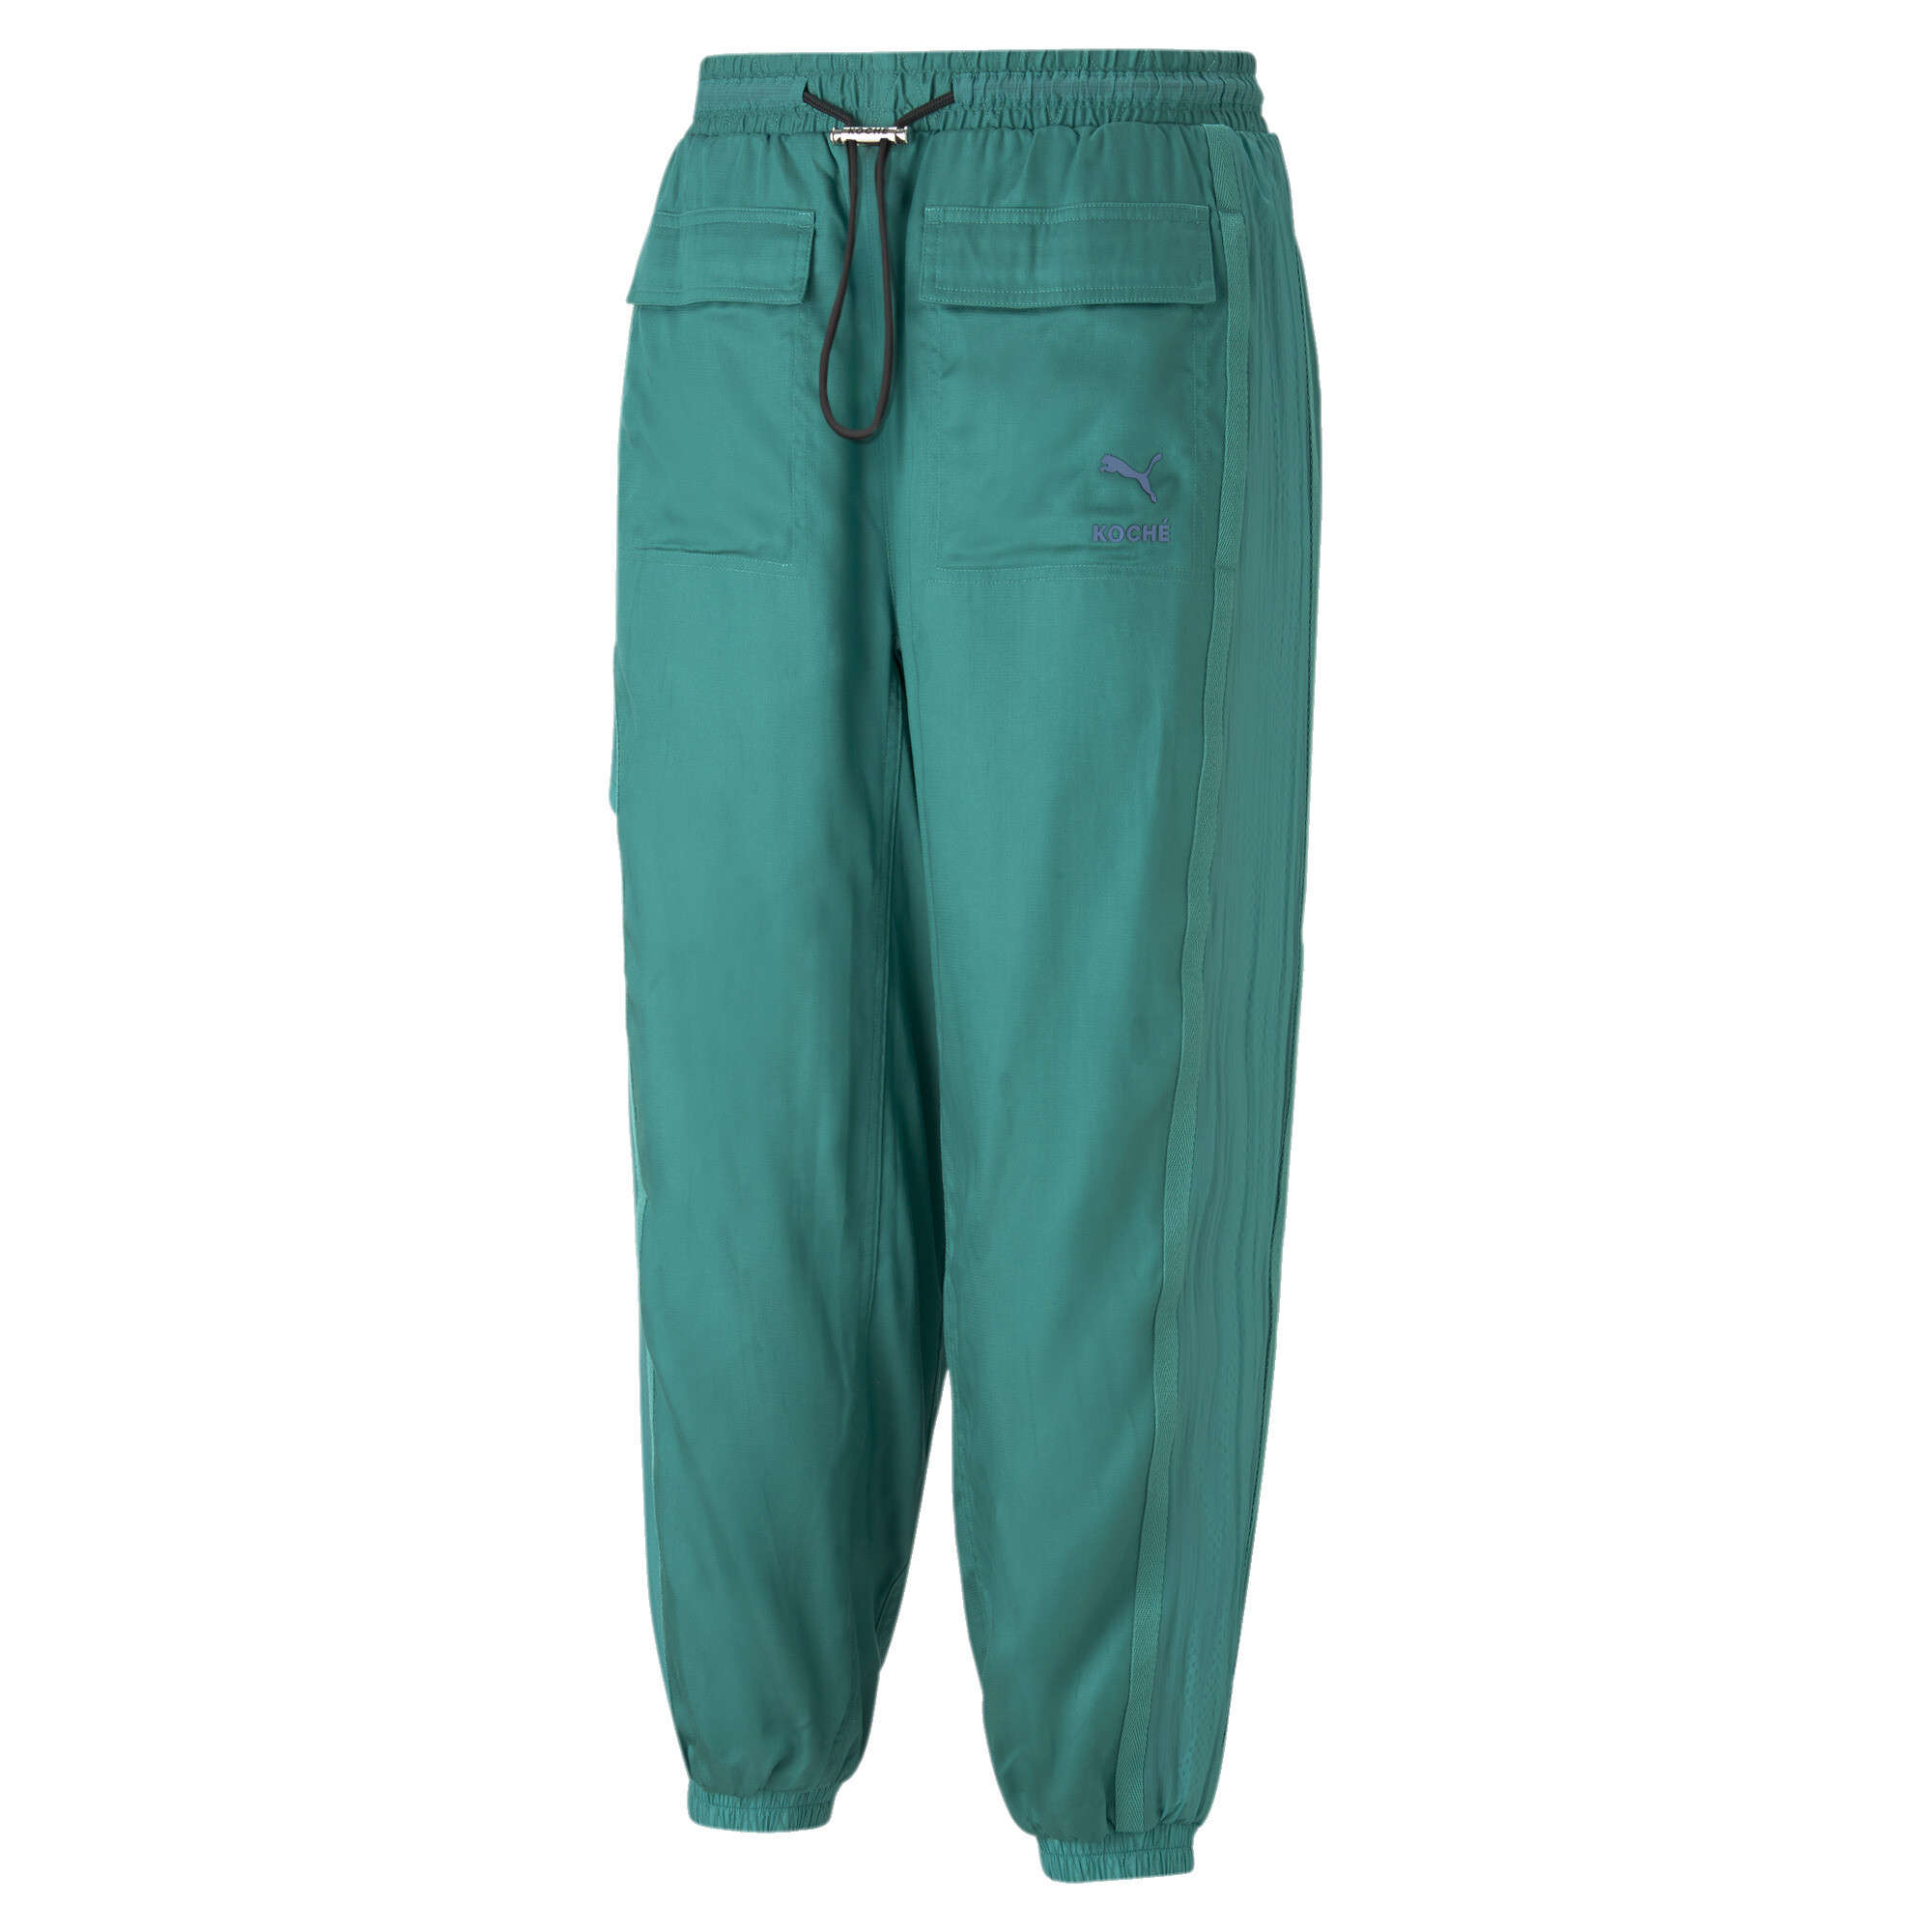 Men's PUMA X KOCHÃ Reversible Pants In Green, Size Medium